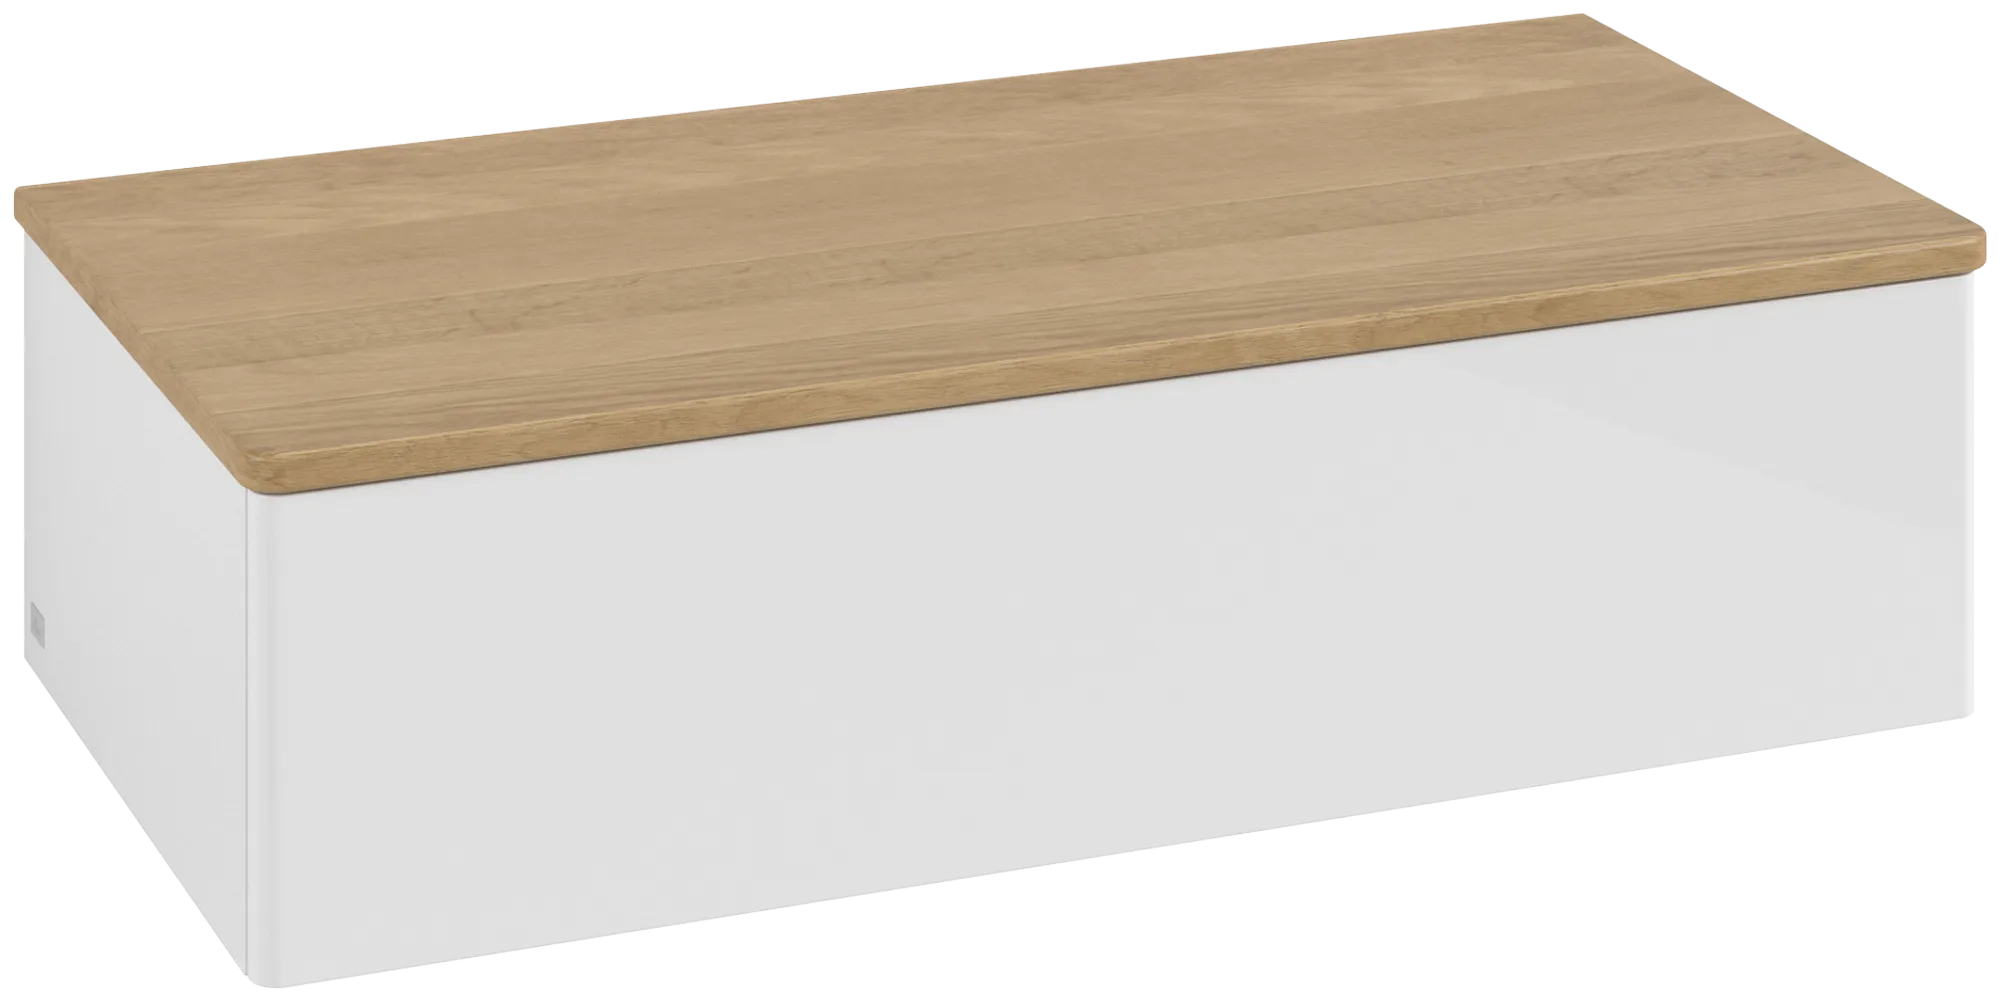 Bild von VILLEROY BOCH Antao Sideboard, mit Beleuchtung, 1 Auszug, 1000 x 268 x 500 mm, Front ohne Struktur, Glossy White Lacquer / Honey Oak #L40001GF